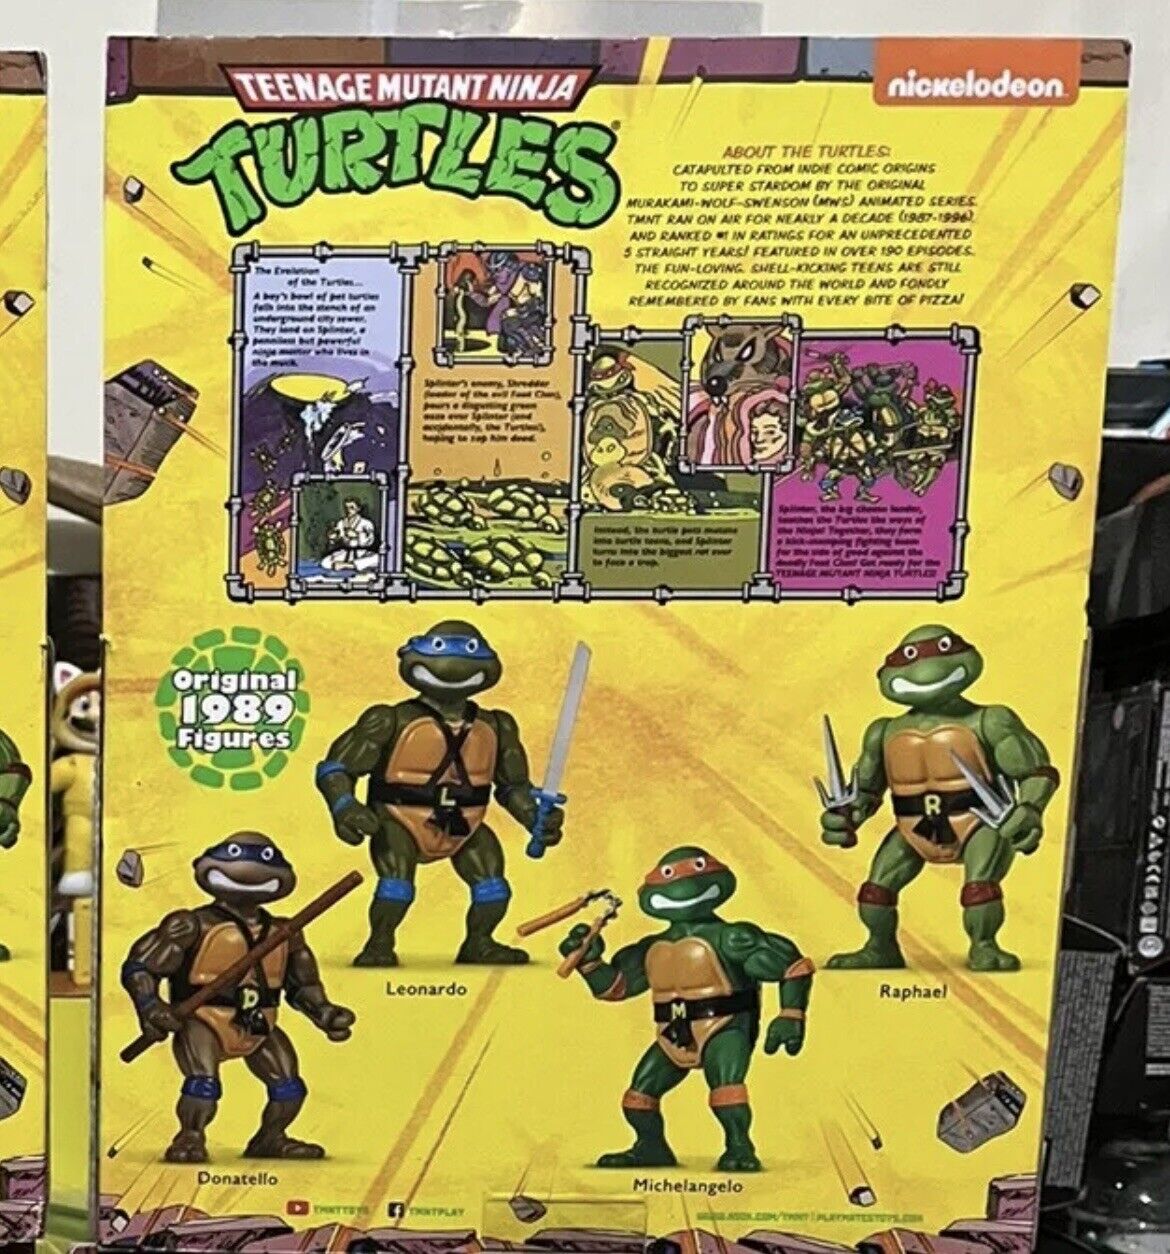 NEW Teenage Mutant Ninja Turtles MICHELANGELO TMNT 12" Playmates Mattel Figure Playmates Toys NOT SPECIFIED - фотография #3